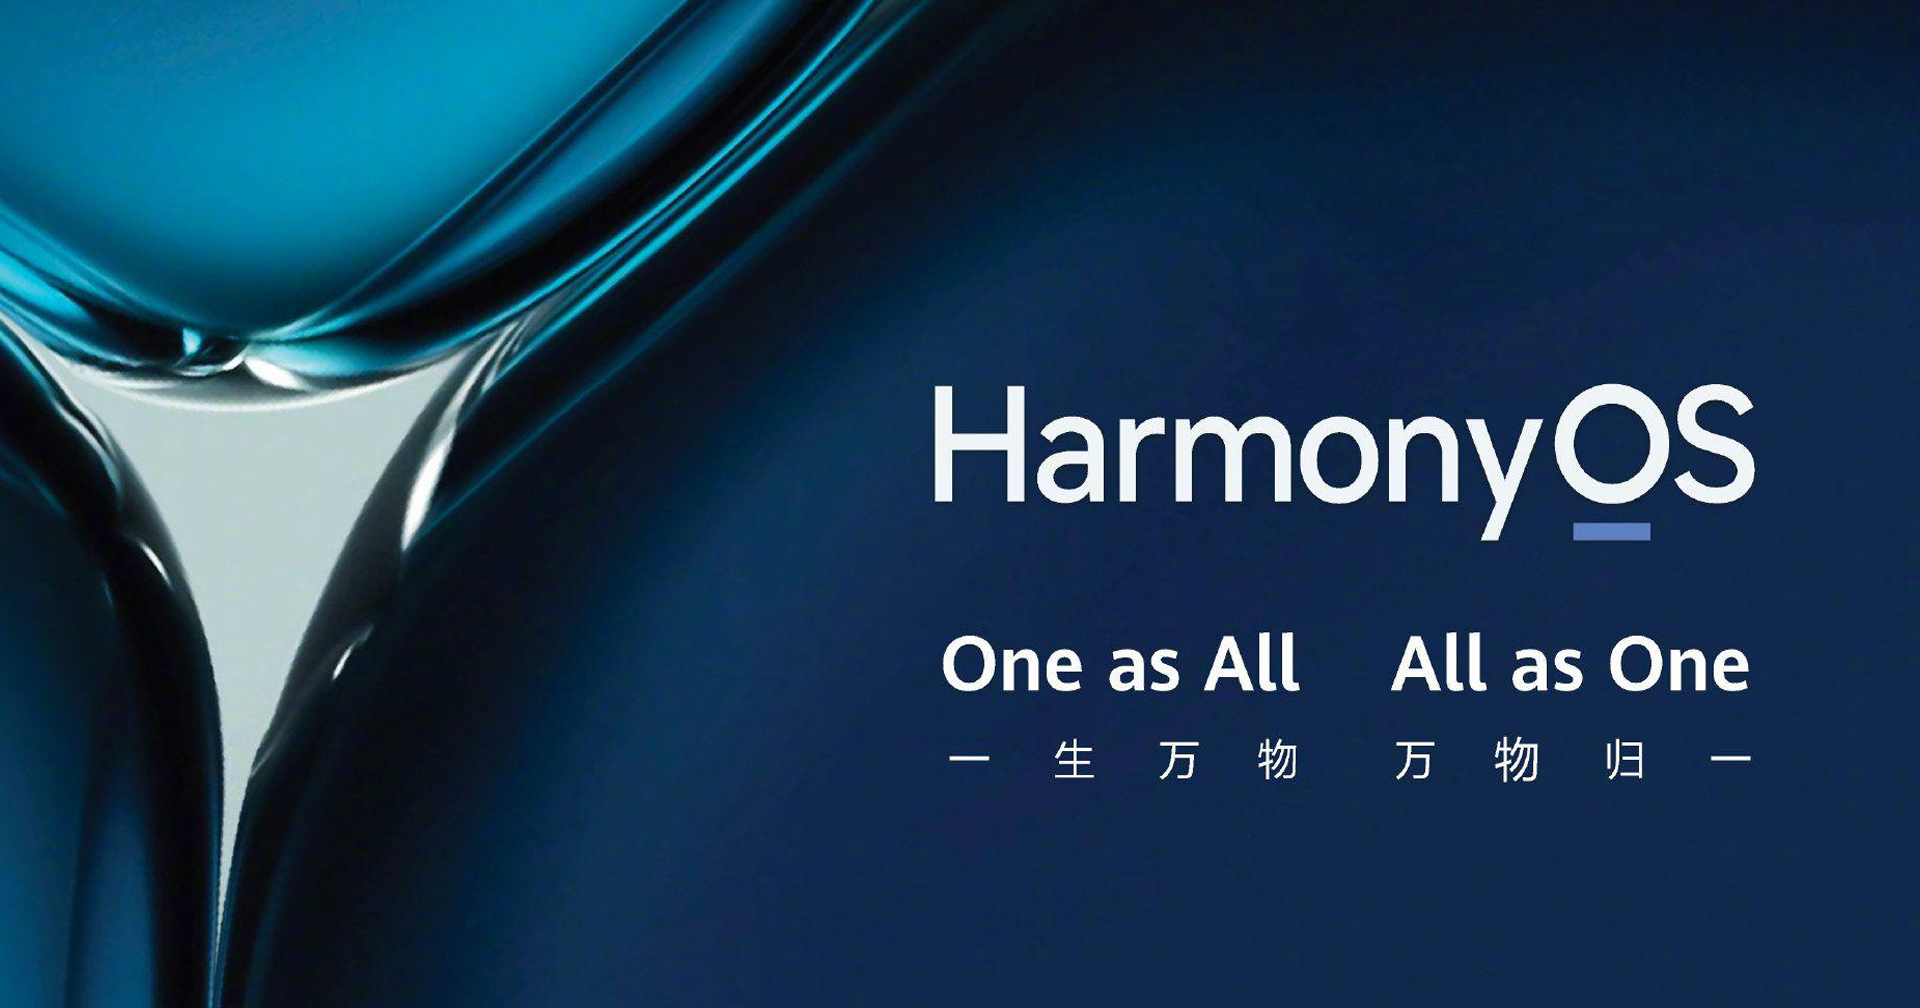 ระบบปฏิบัติการ HarmonyOS 2.0 มีผู้ใช้ถึง 90 ล้านยูสเซอร์แล้ว